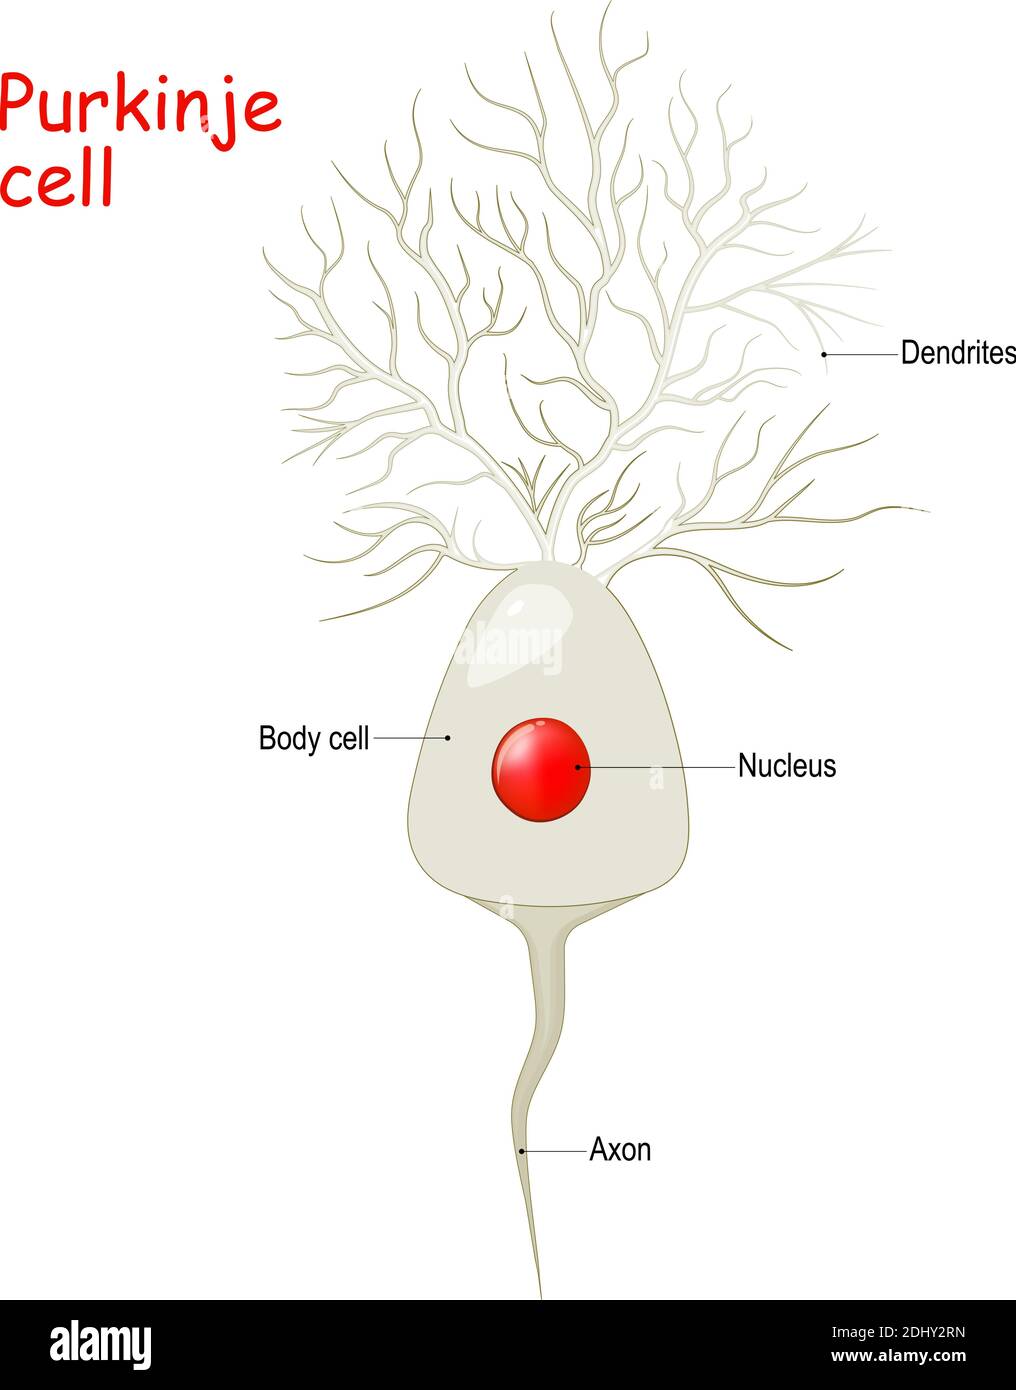 Anatomia cellulare Purkinje. Corpo cellulare con nucleo, dendriti e axone. Strato del cervelletto contiene i corpi delle cellule Purkinje Illustrazione Vettoriale